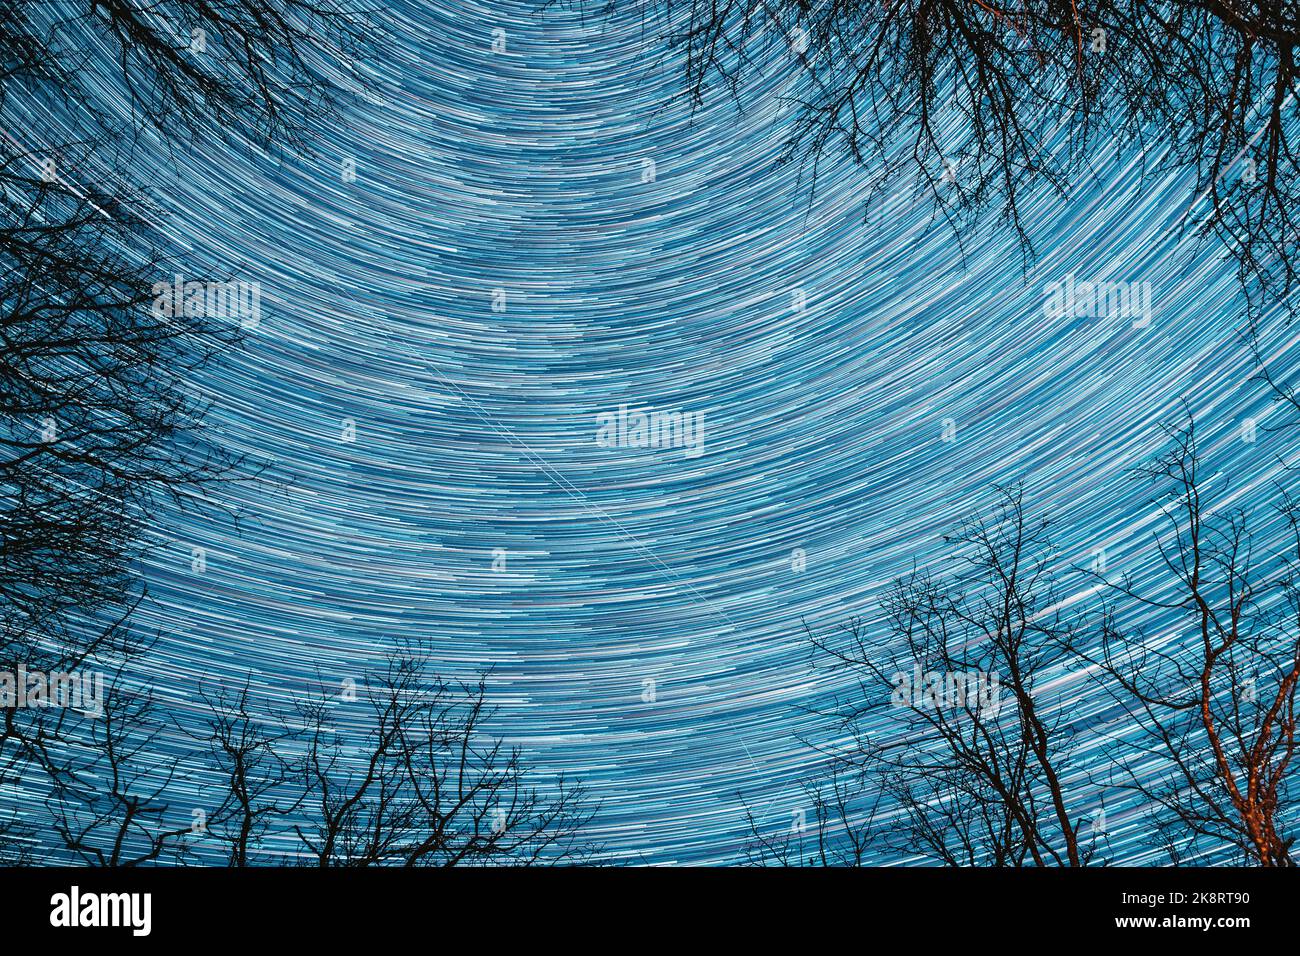 Erstaunliche Ungewöhnliche Sterne Effekte In Himmel. Abstrakte Sternenlinien bewegen sich im Himmel.Spin-Trails von Sternen über Baumkronen ohne Laub. Sky Star Bei Nacht Drehen Stockfoto